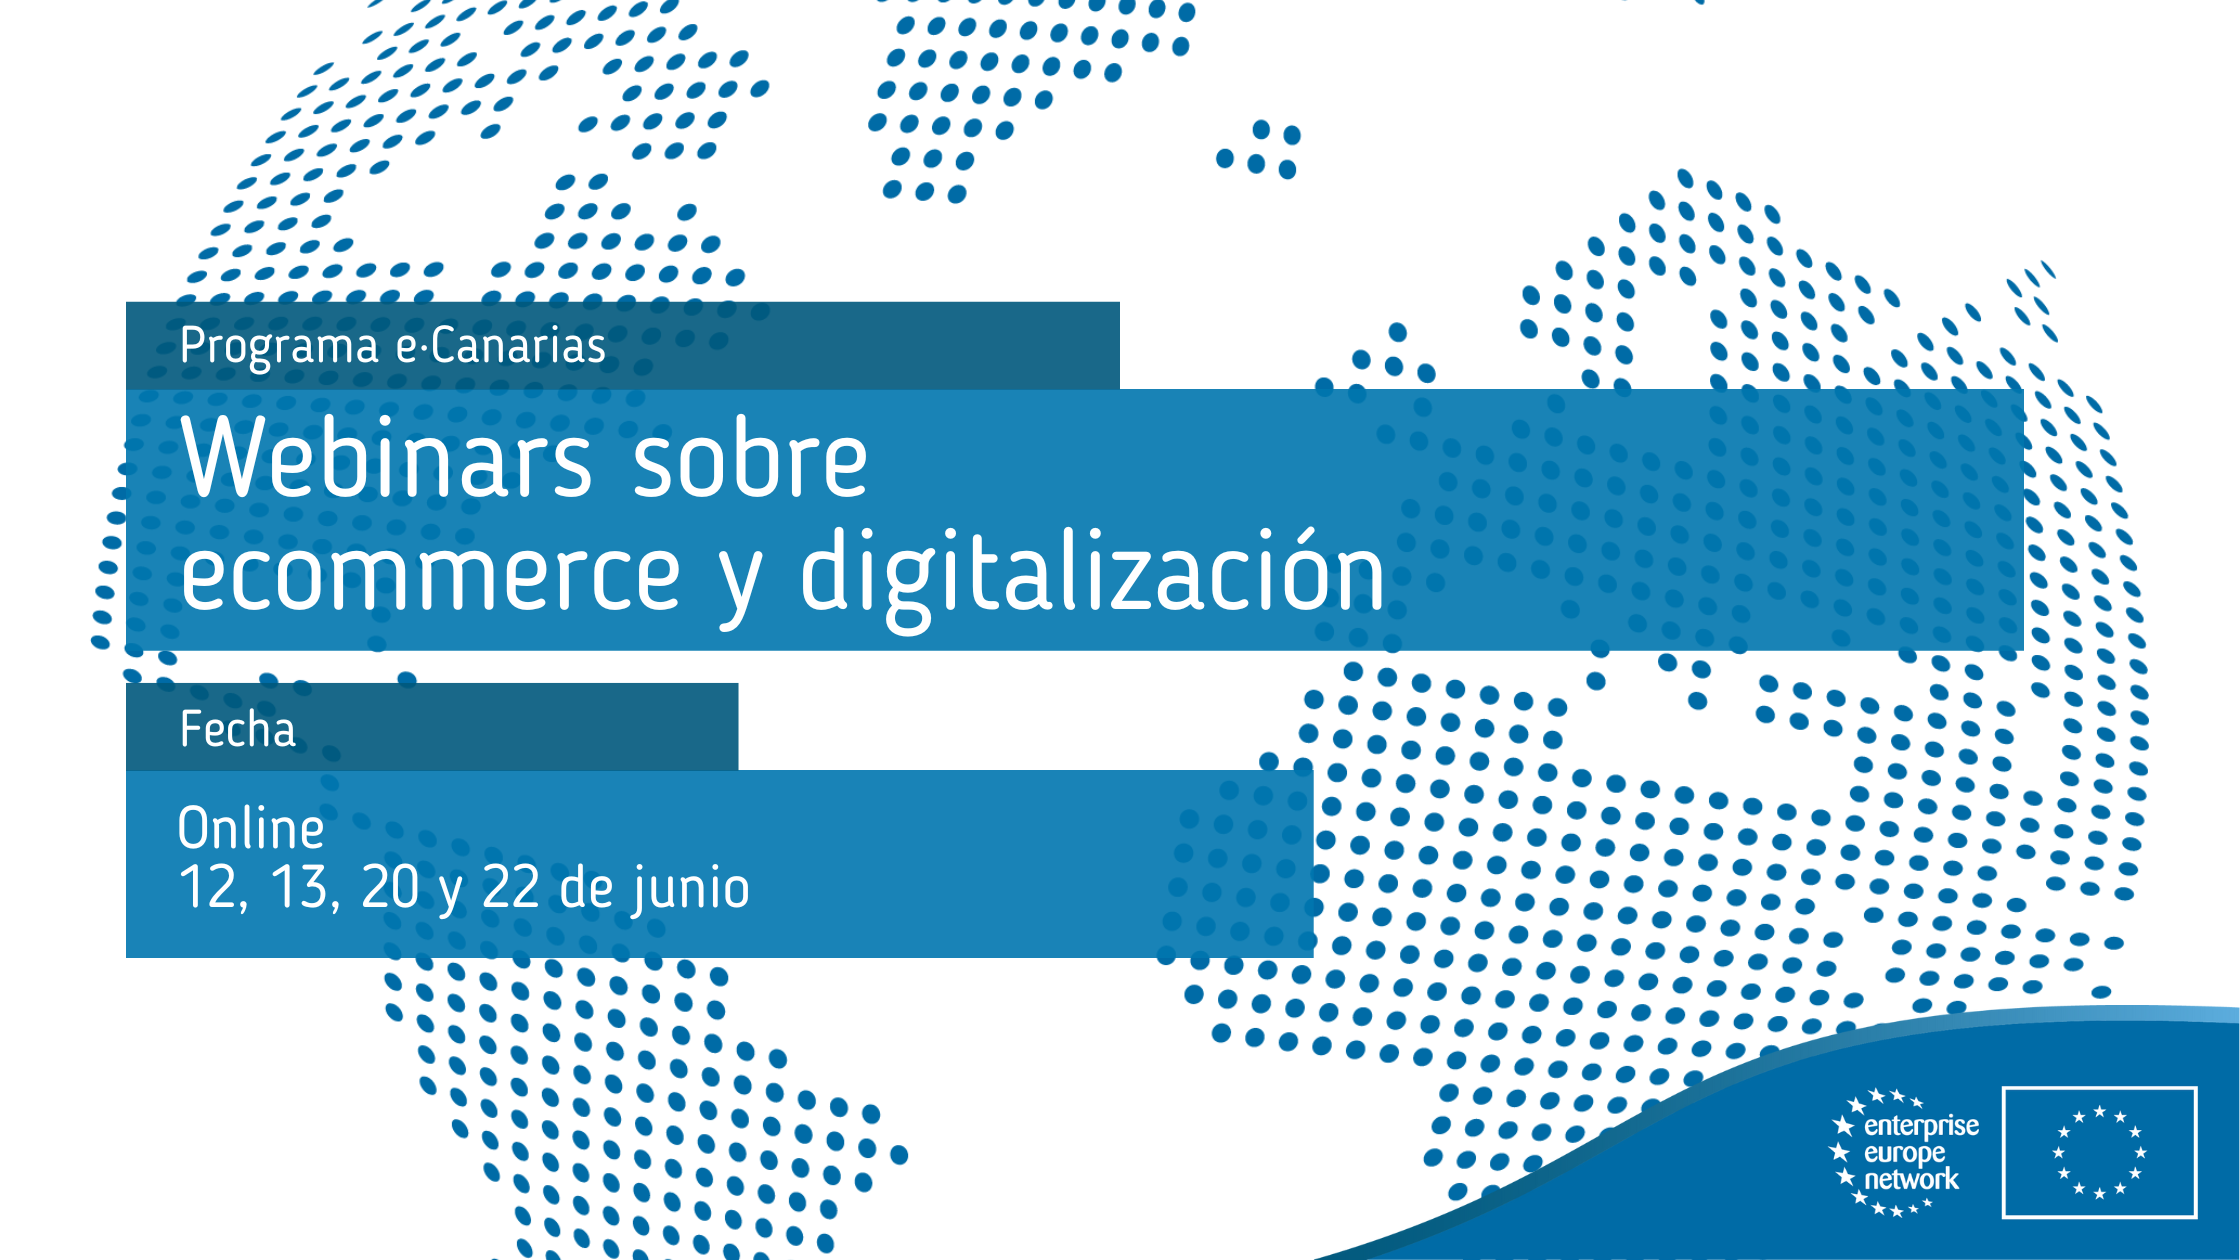 Webinars_sobre_ecommerce_y_digitalización_del_Programa_eCanarias